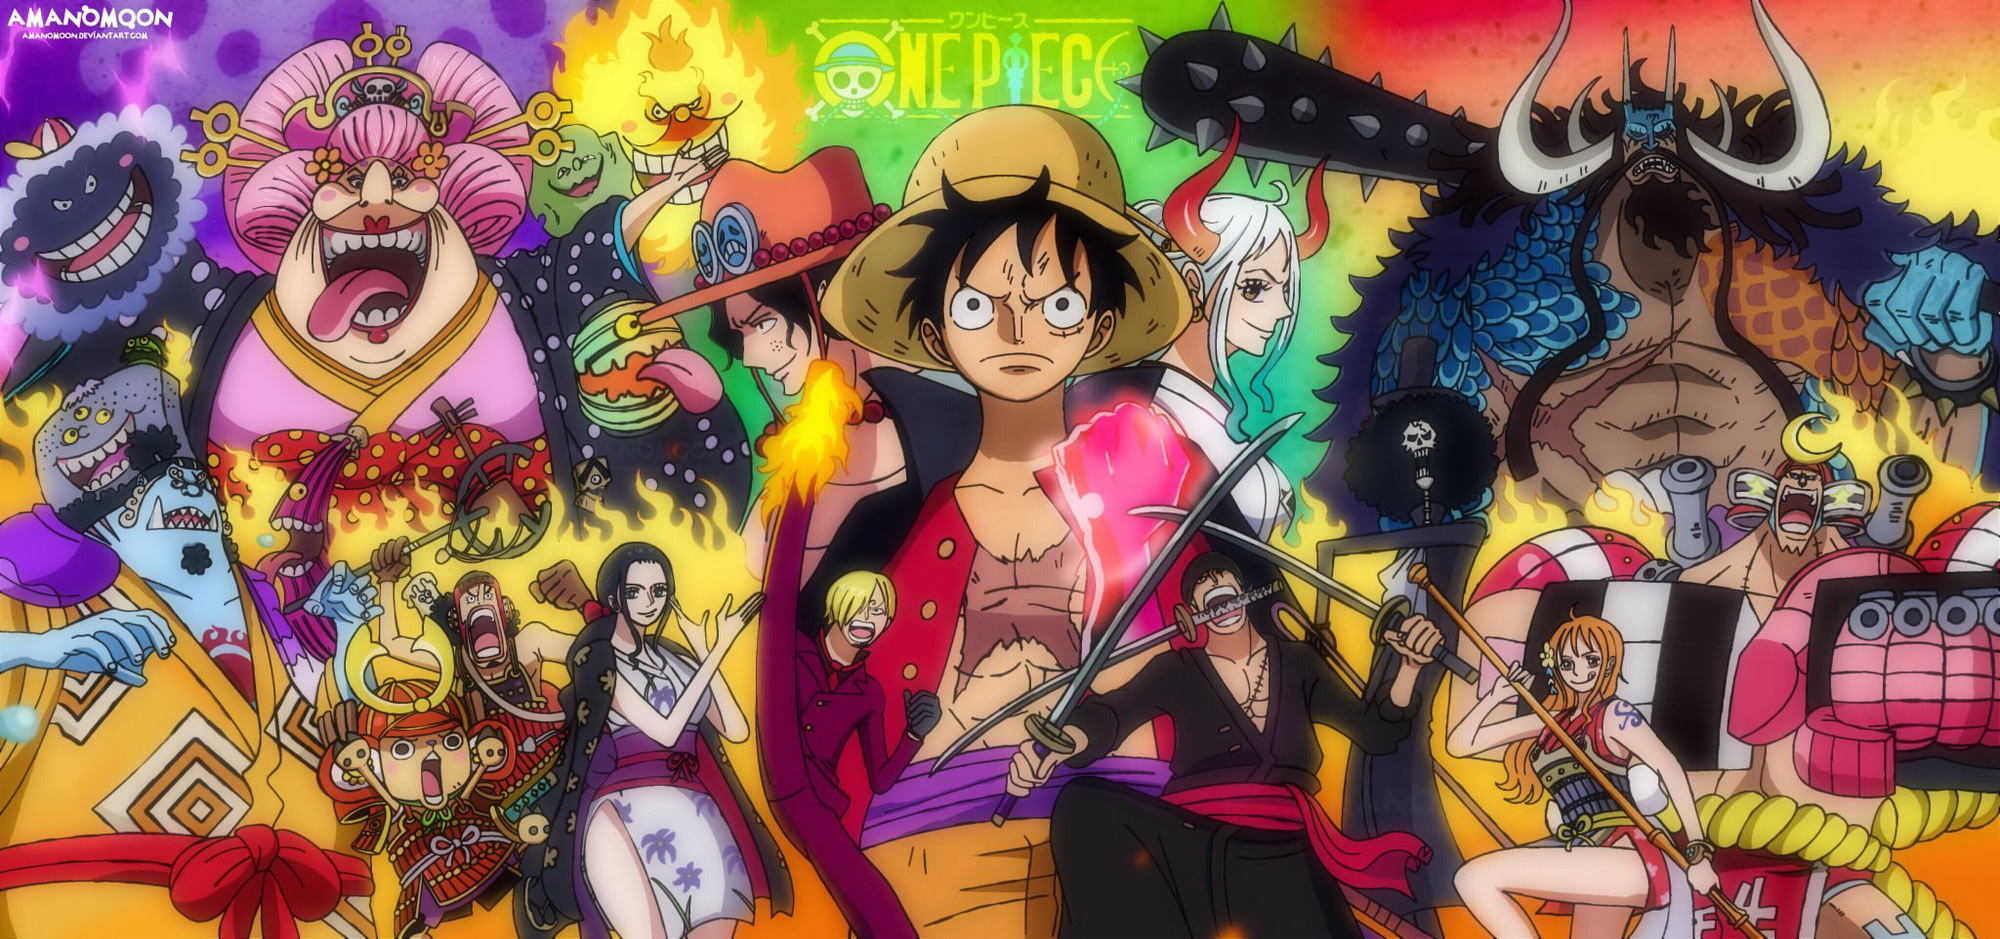 Hãy đến với ảnh bìa One Piece để khám phá thế giới phiêu lưu đầy màu sắc cùng đội hình hùng hậu của Luffy!